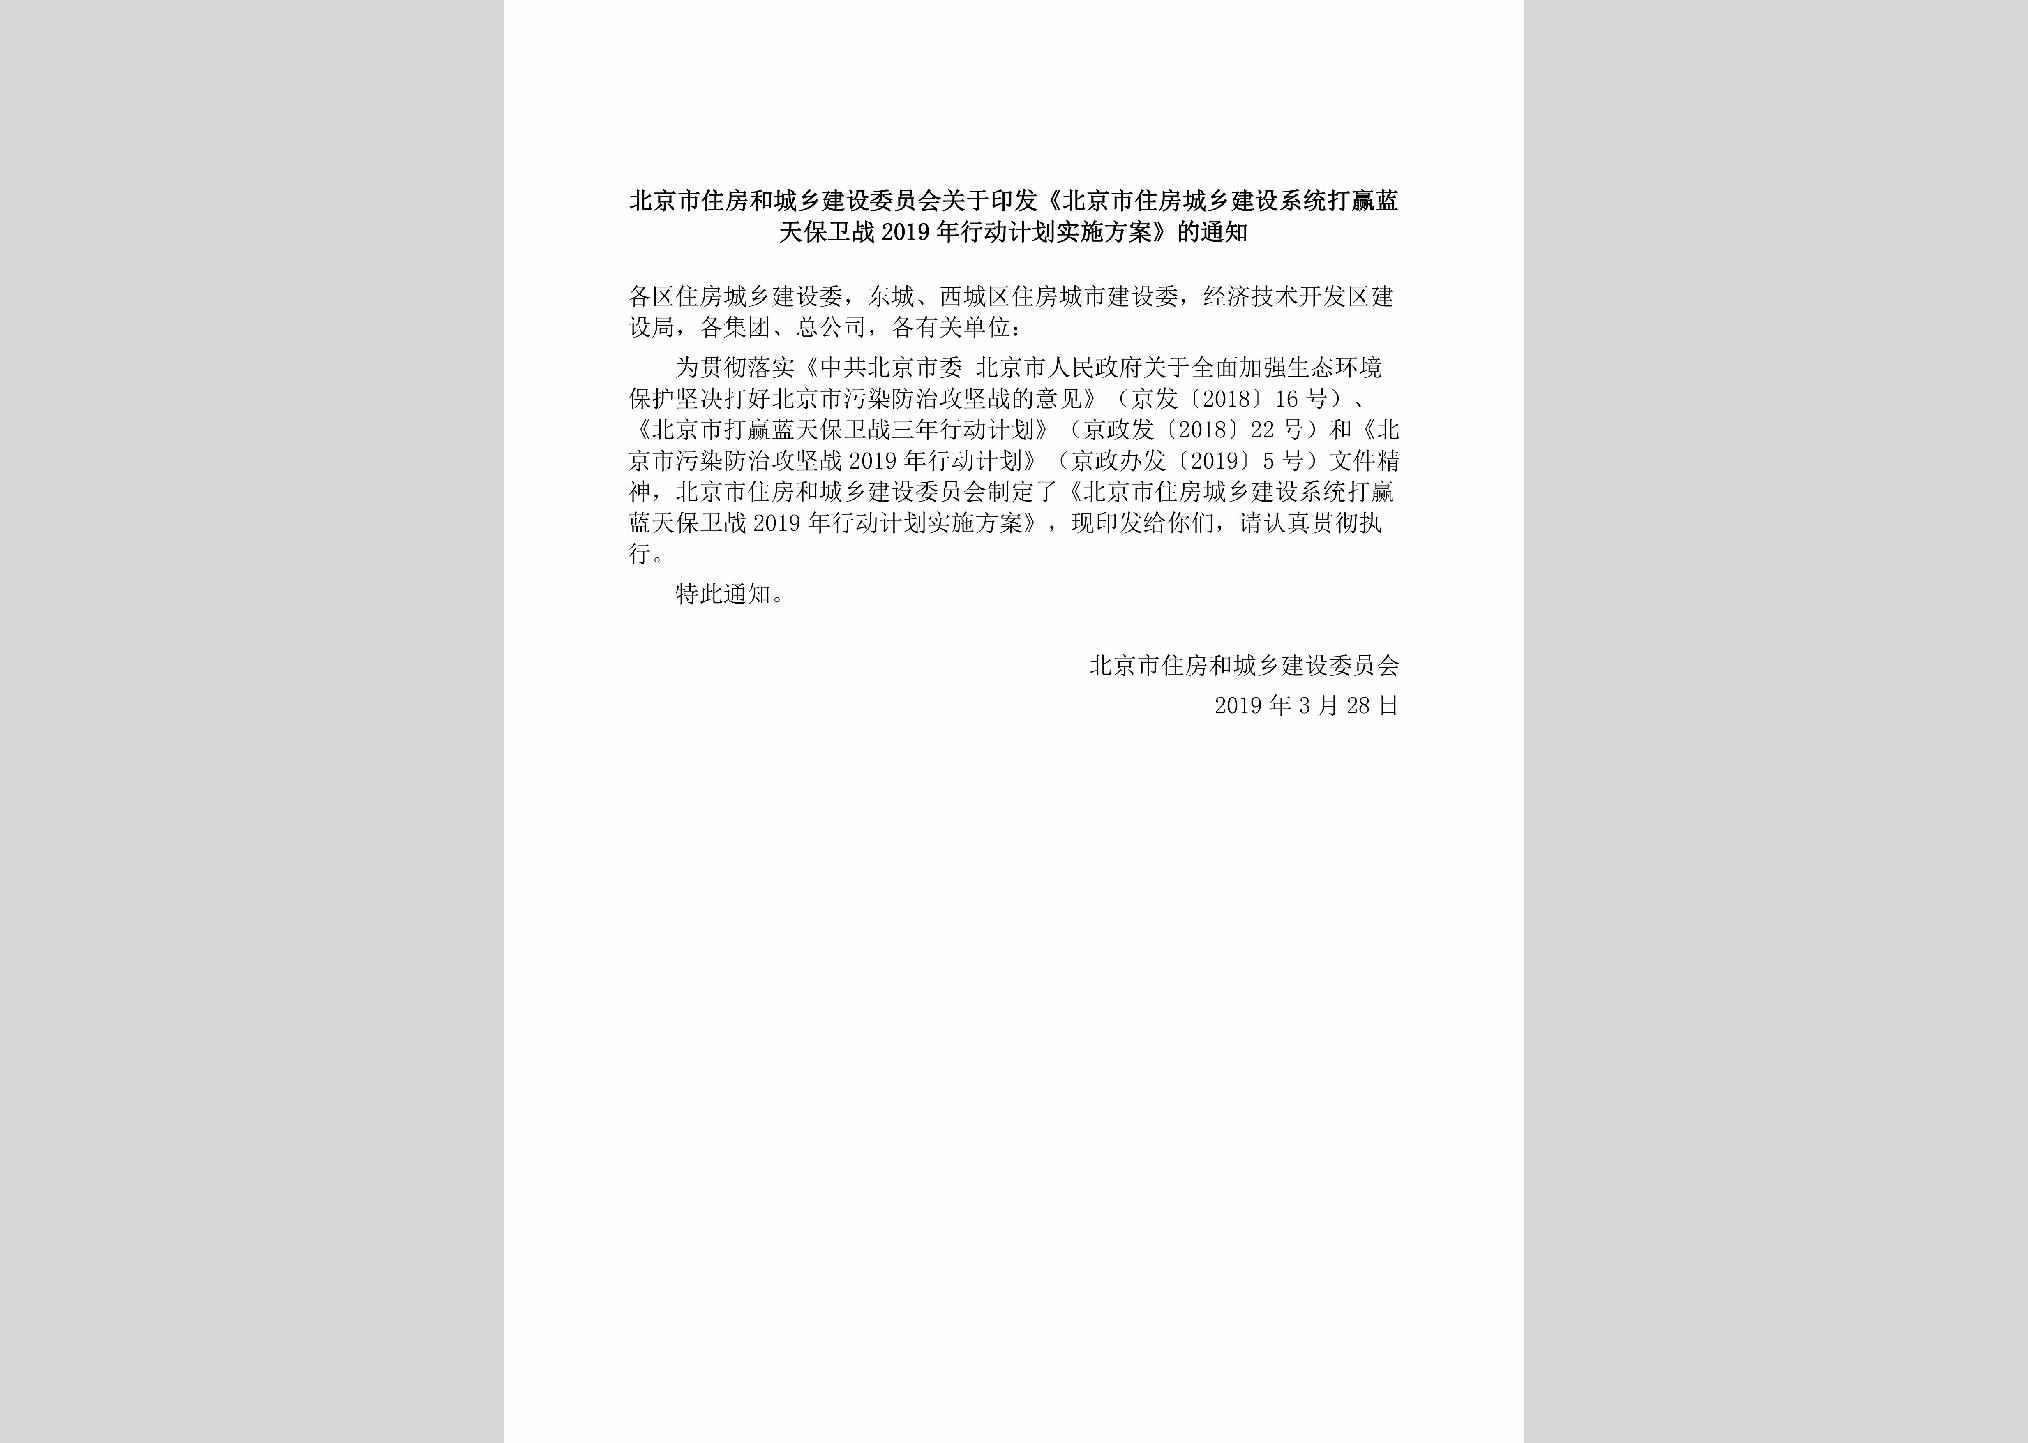 BJ-DYLTBWZX-2019：北京市住房和城乡建设委员会关于印发《北京市住房城乡建设系统打赢蓝天保卫战2019年行动计划实施方案》的通知